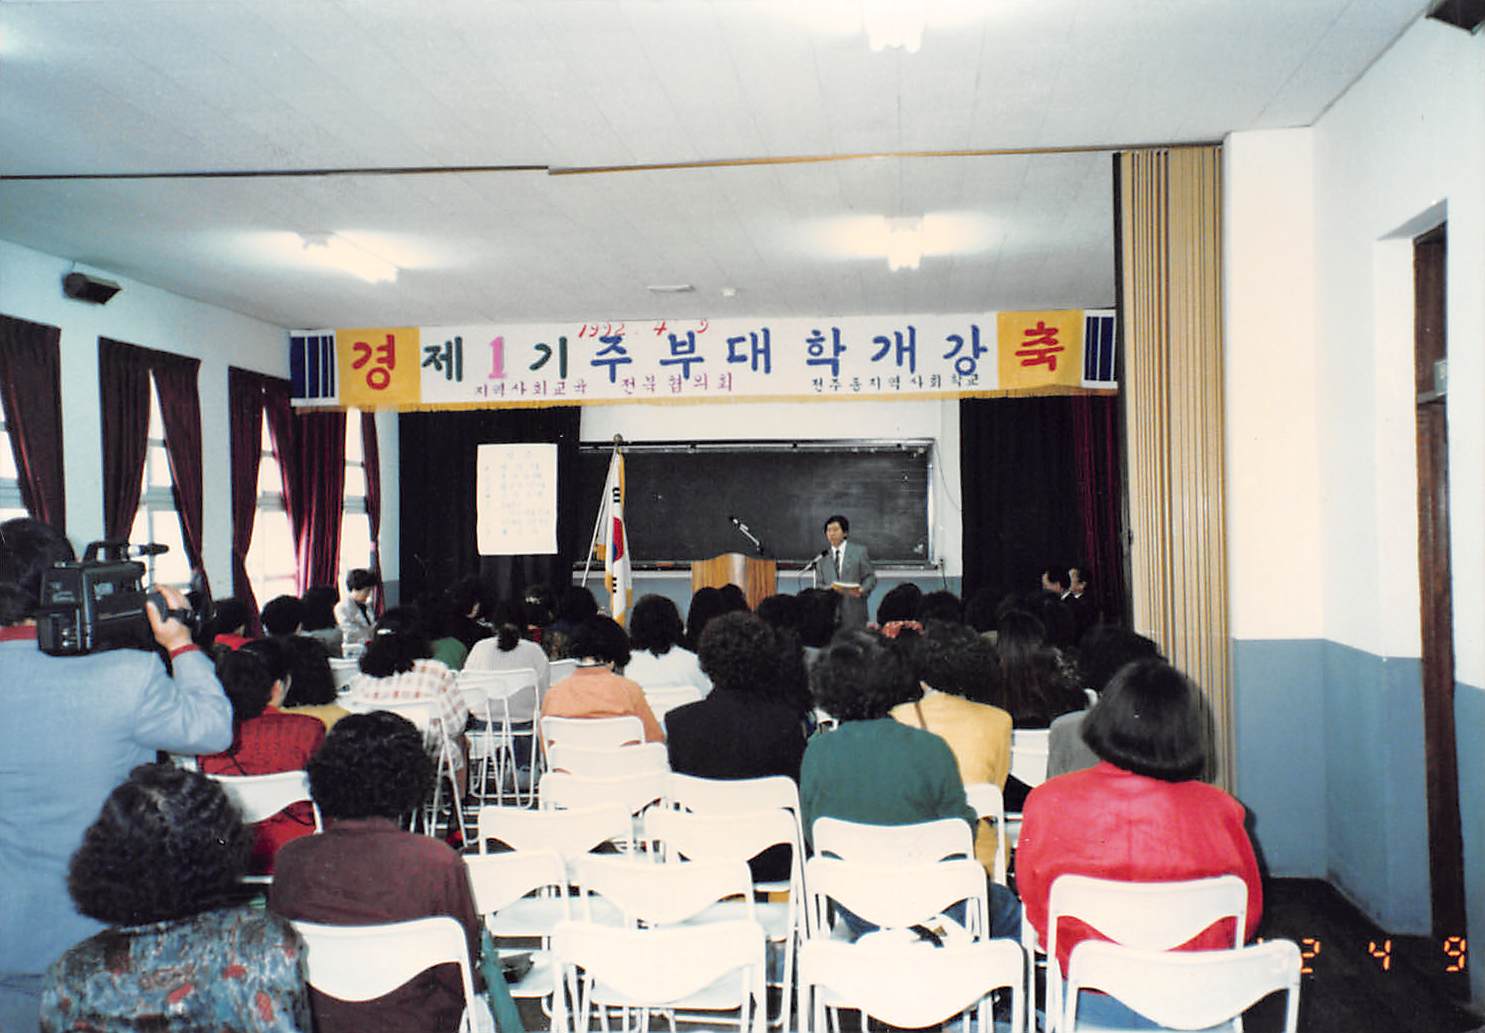 “제1기 주부학교 개강”, 1992년 4월 9일, 한국지역사회학교